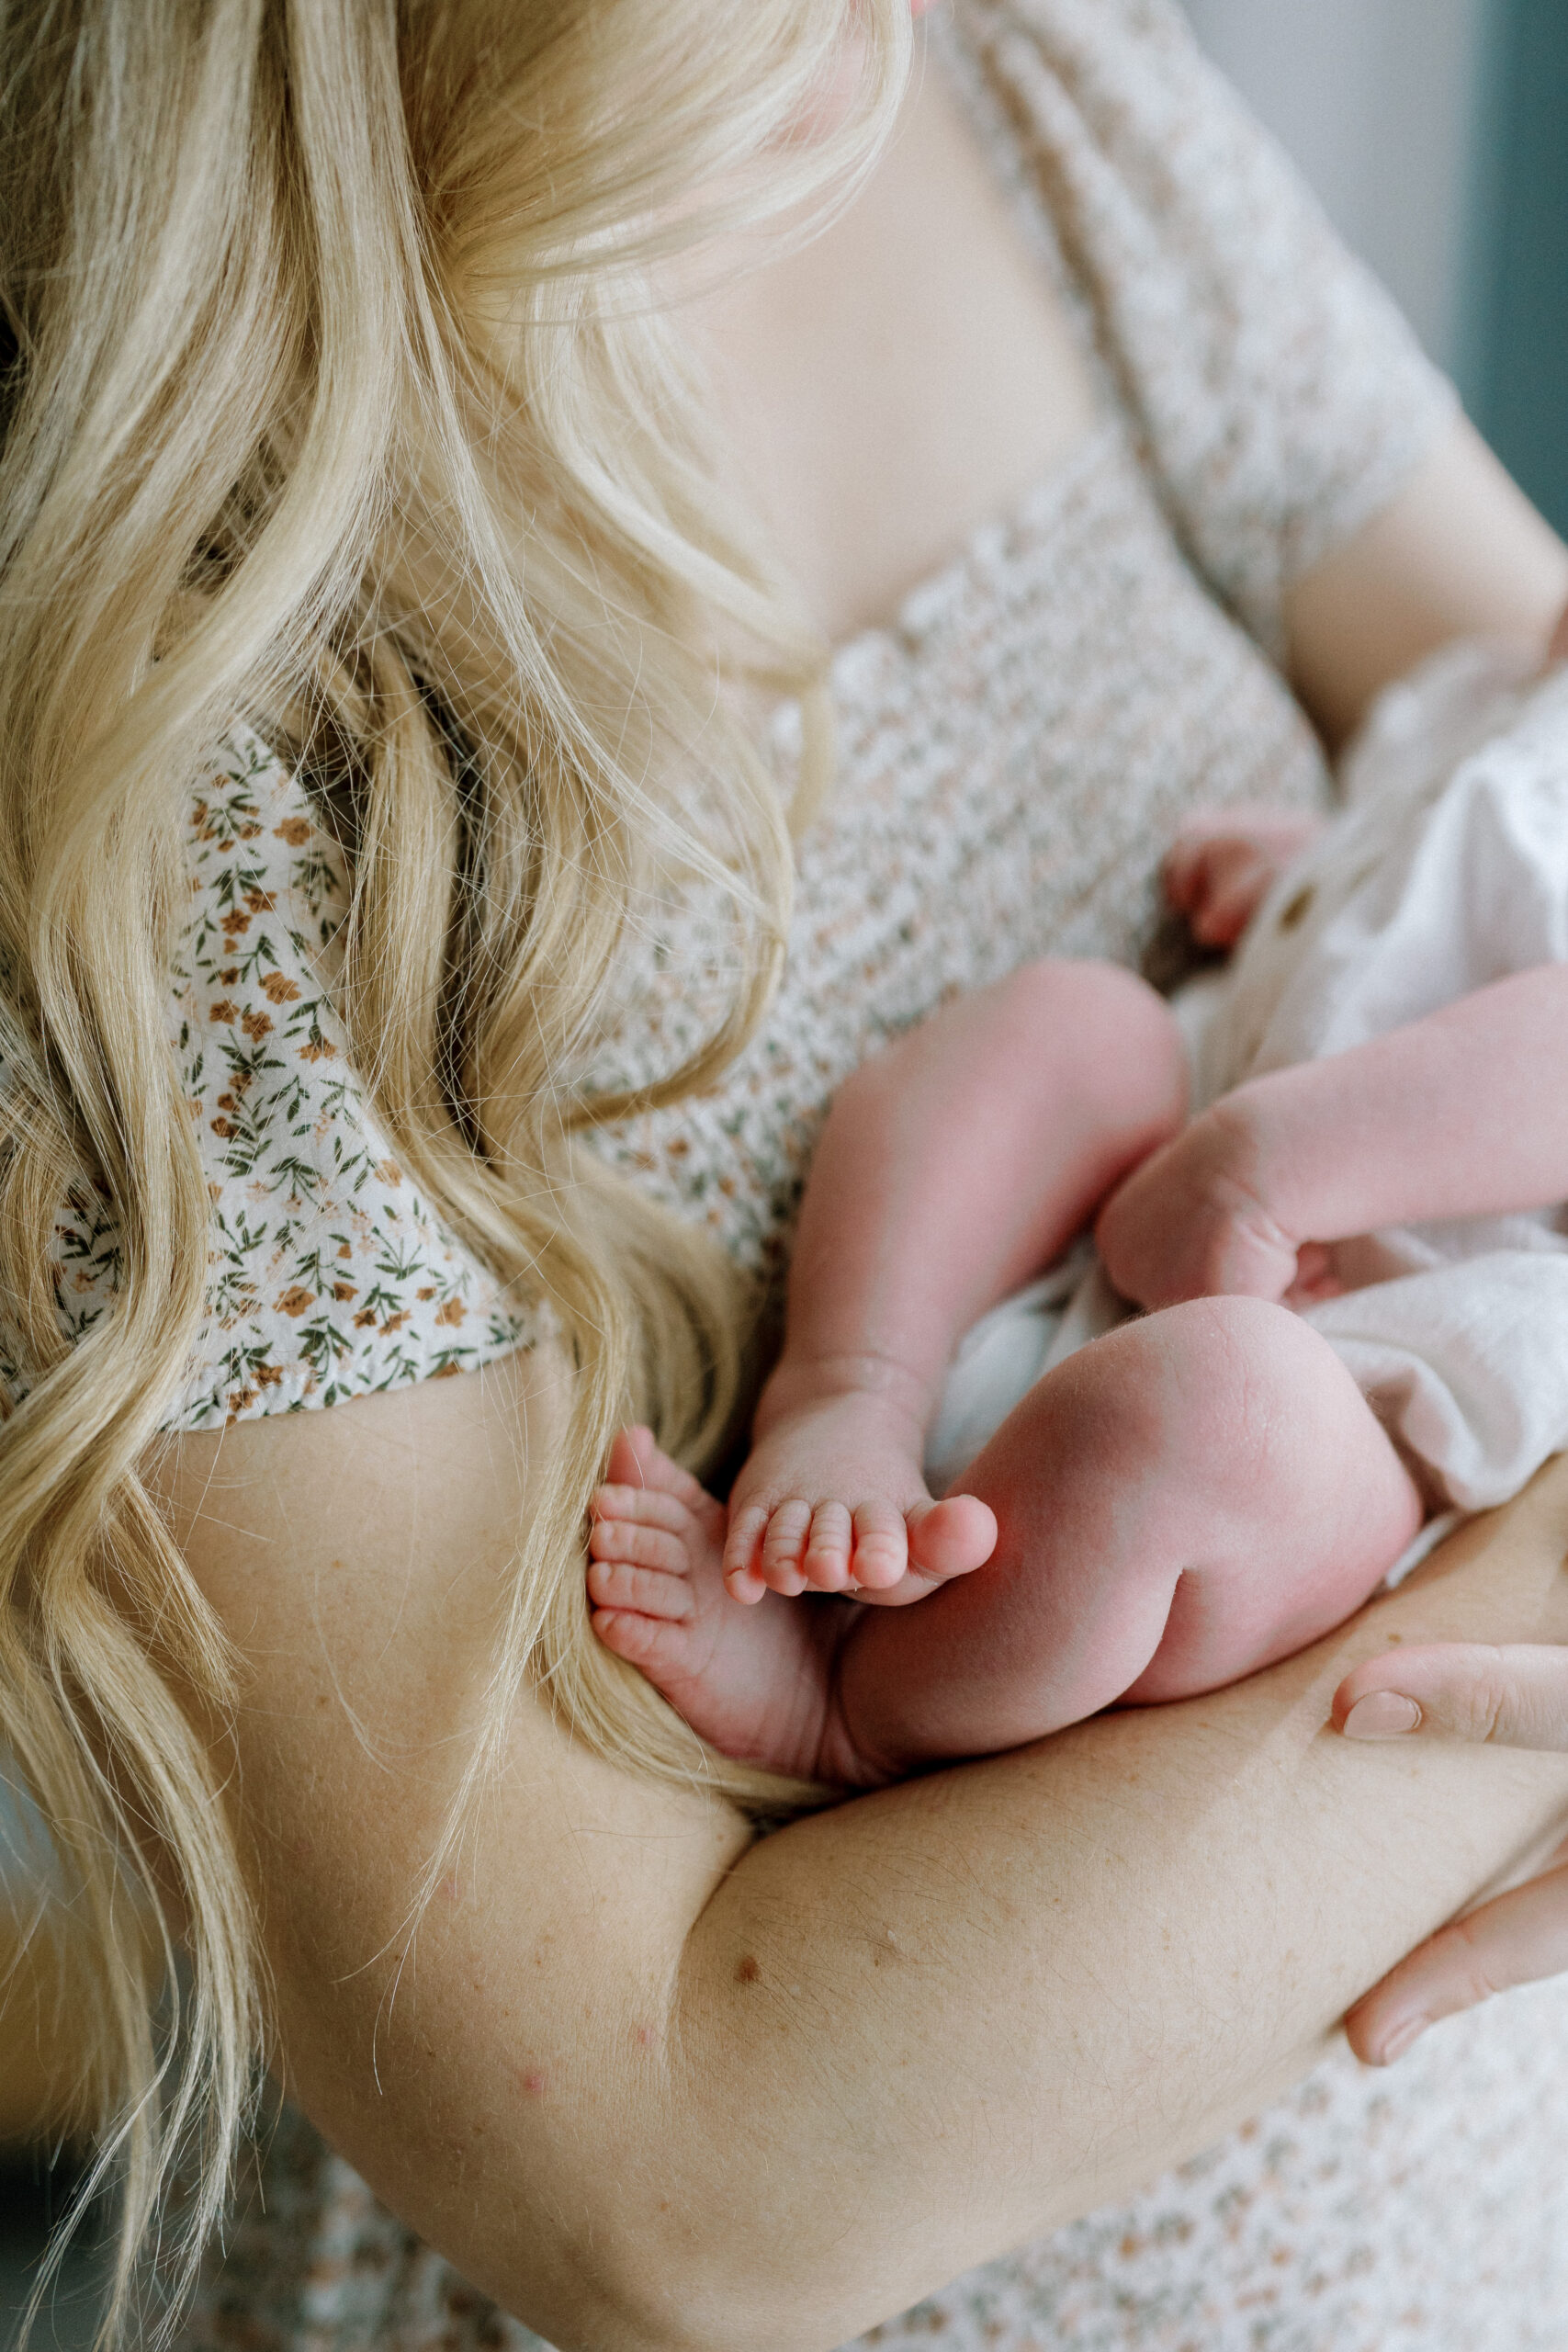 Breastfeeding Essentials - Kelly Zugay - Mom Blog, Minnesota Blog, Minnesota Mom Blog - Made by Motherhood